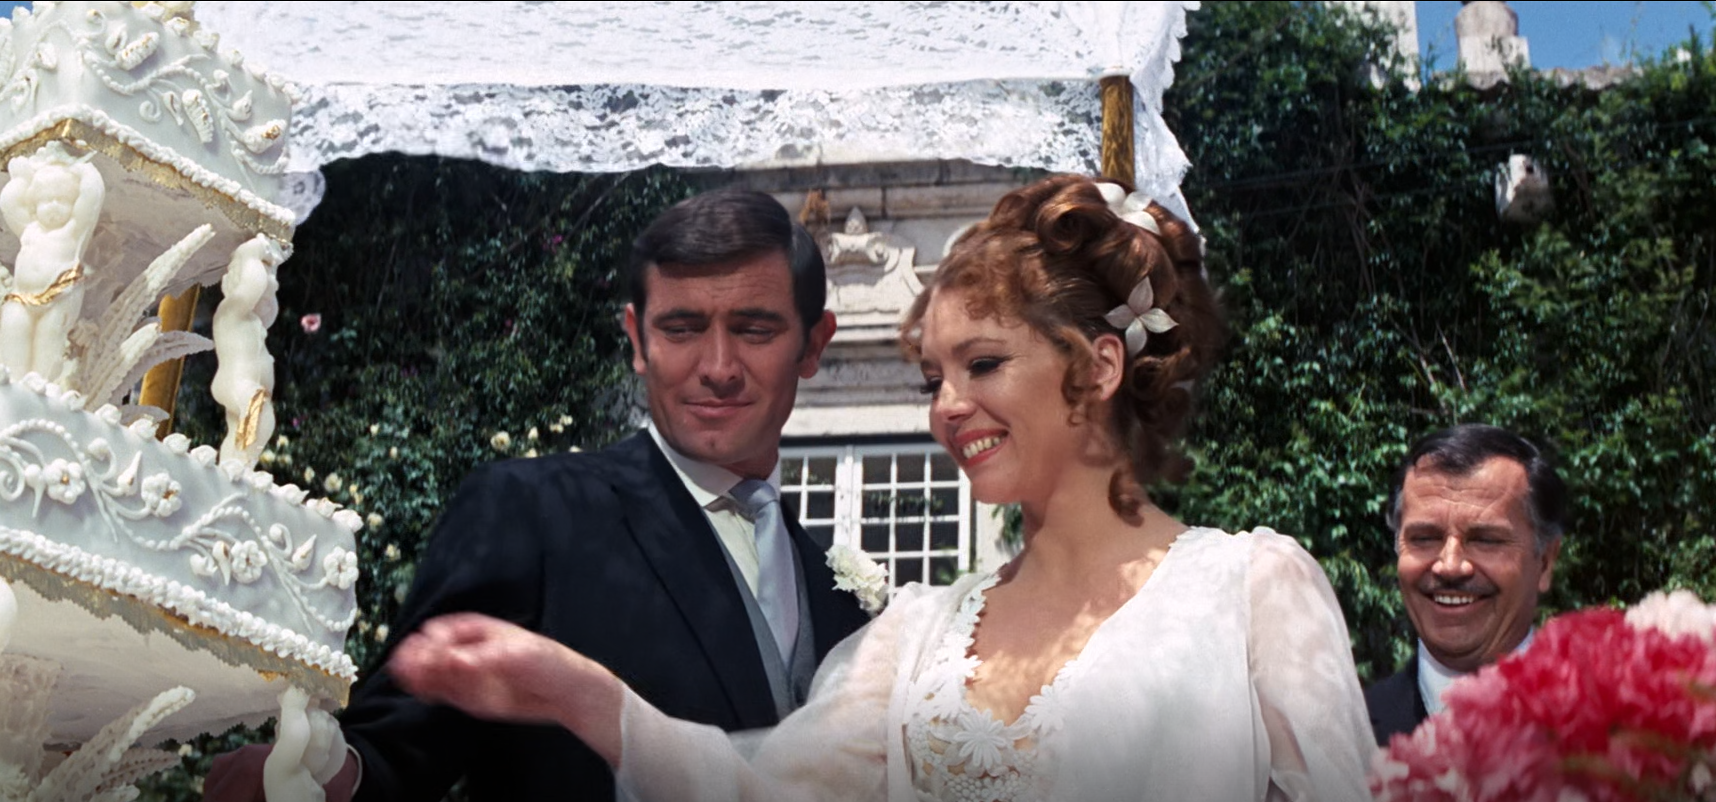 007系列电影第六部《007女王密使》看邦德如何在雪山之巅英雄救美